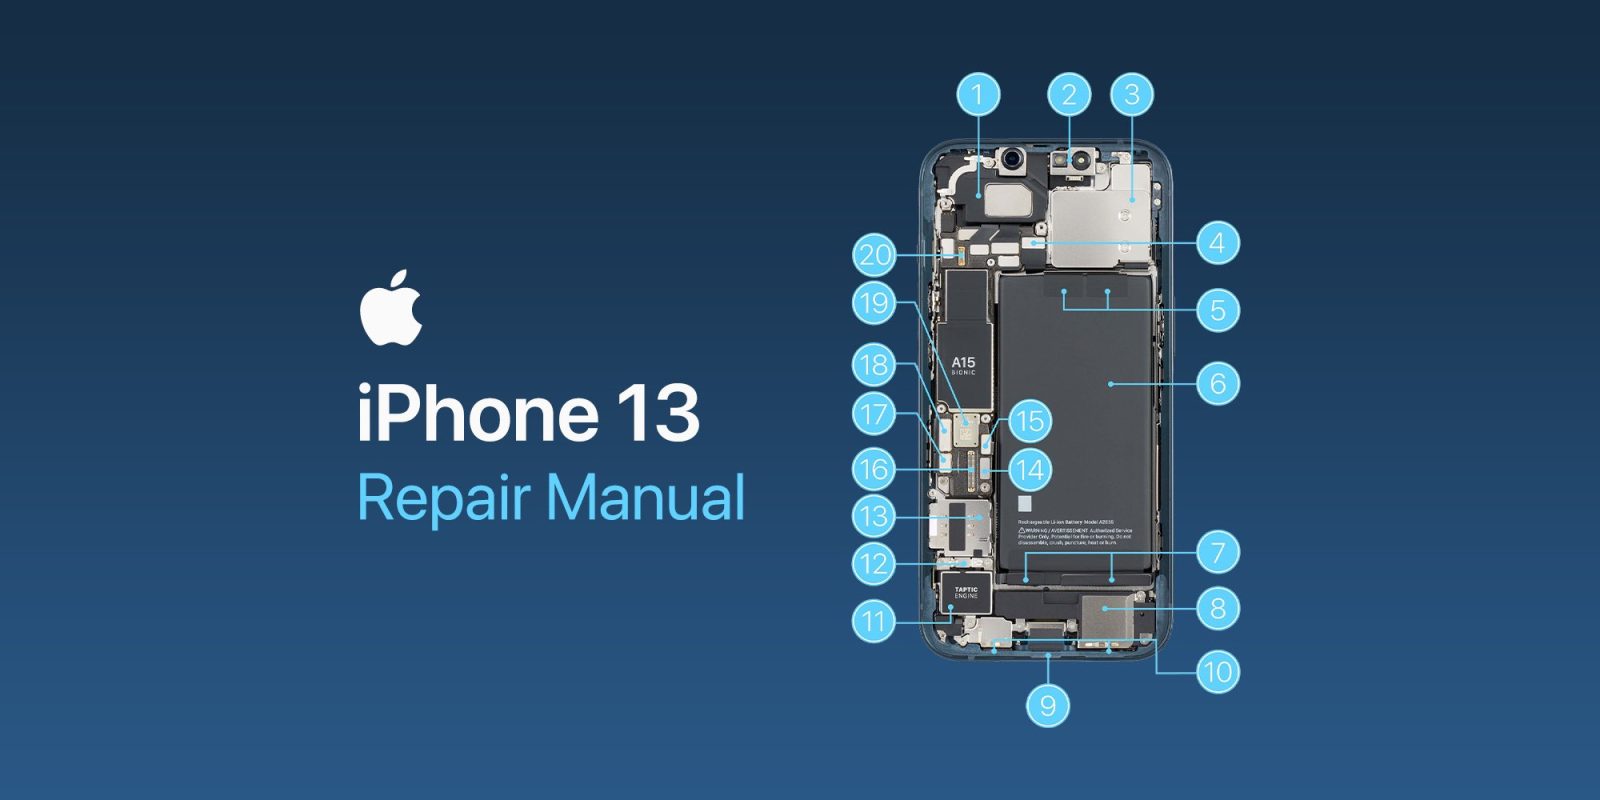 Download iPhone repair manuals